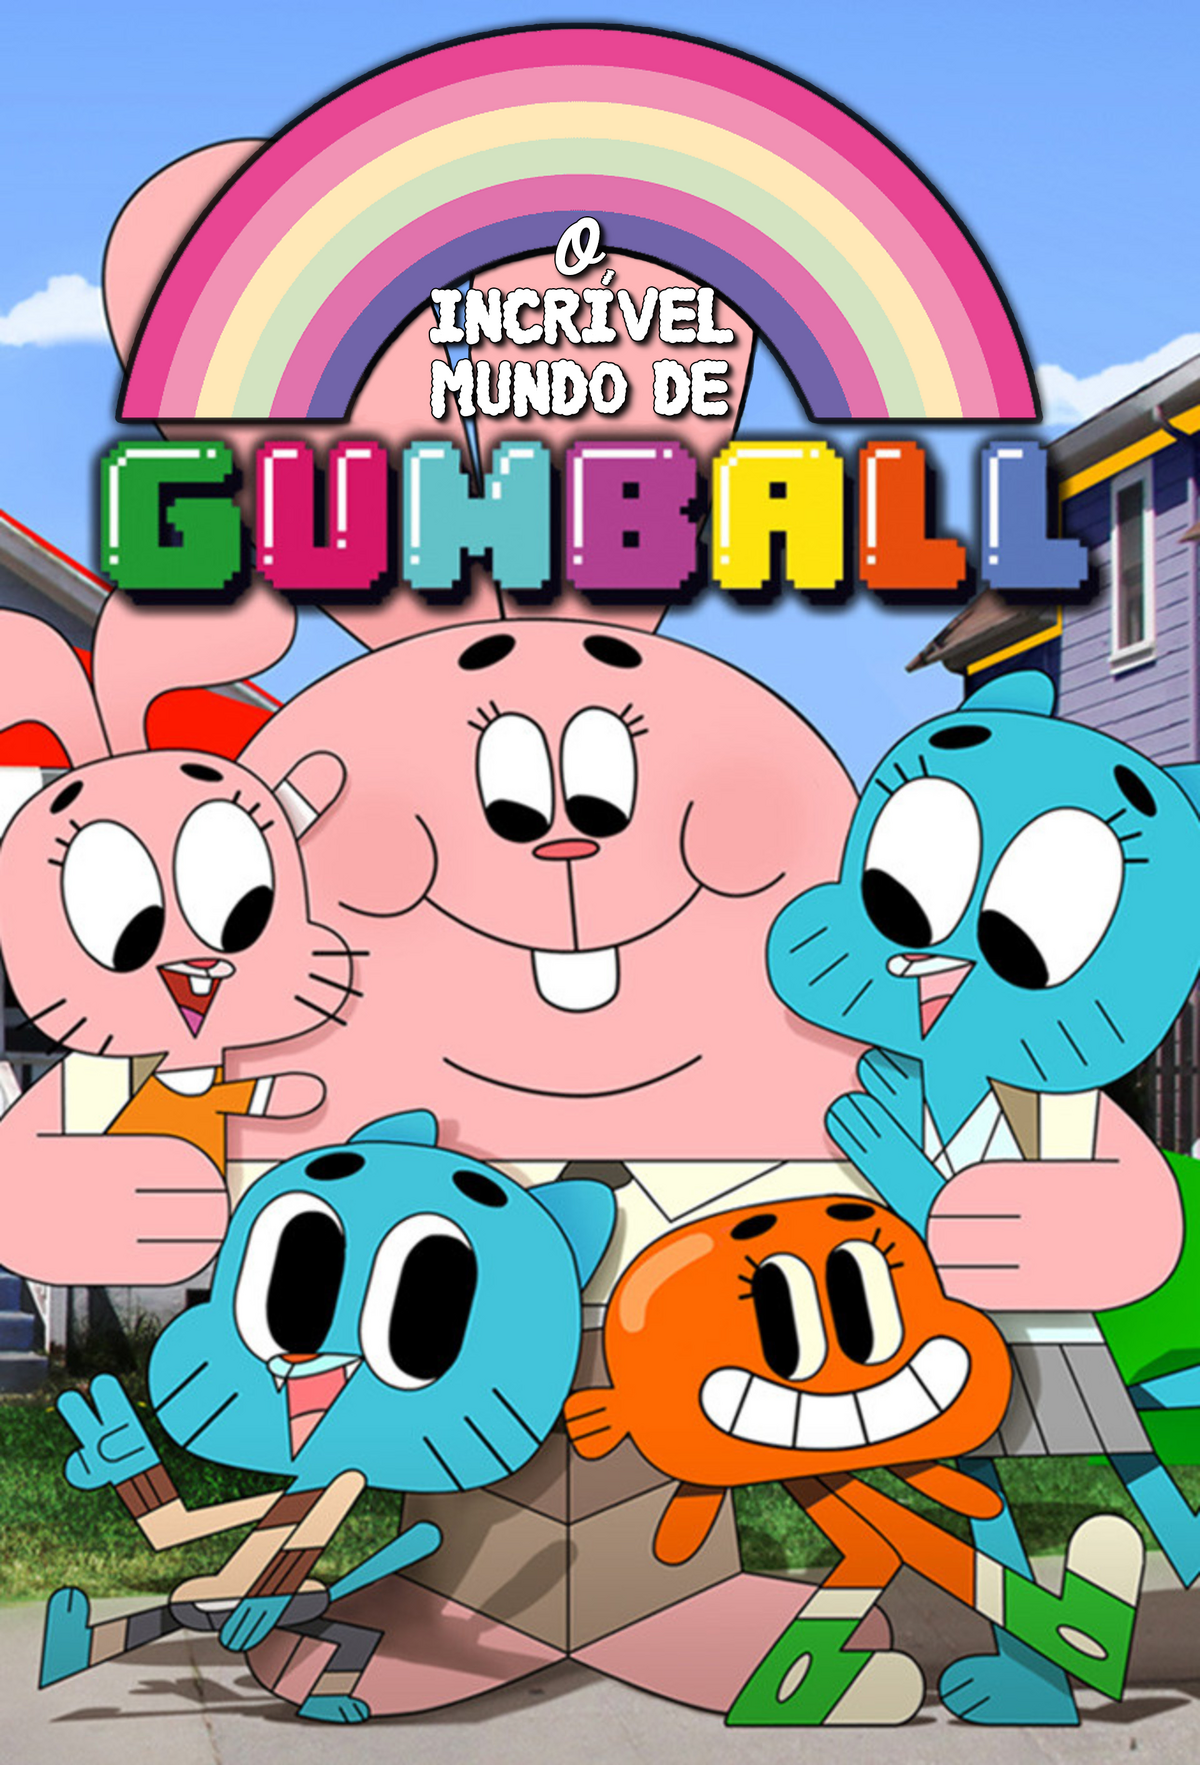 Que personagem do Gumball serias?